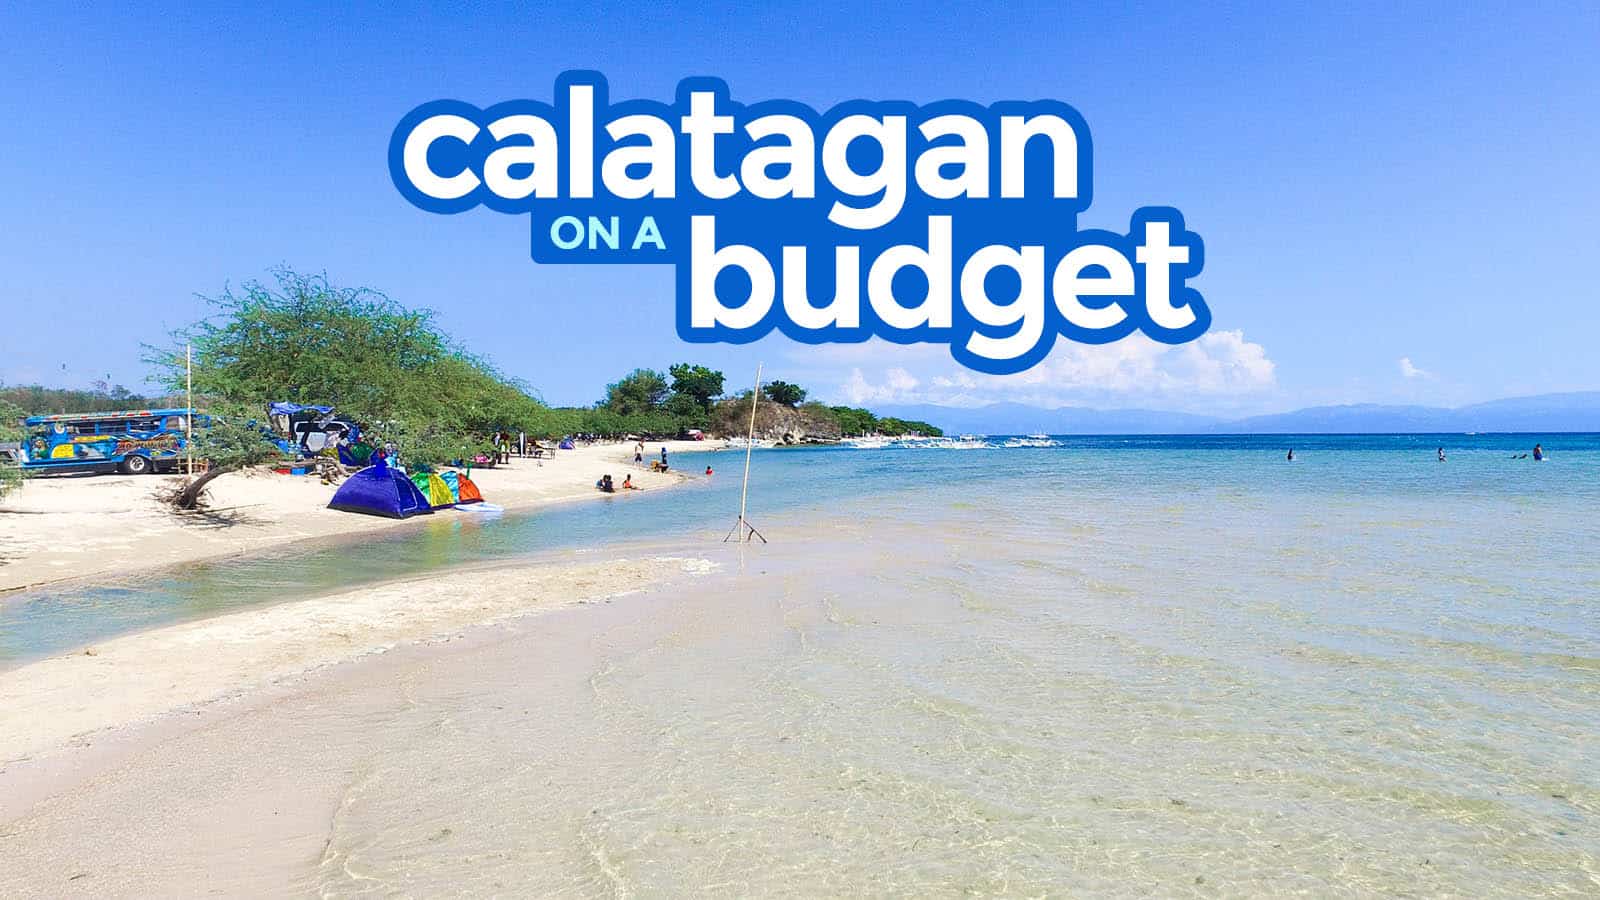 巴丹加斯卡拉塔甘:旅游指南与预算行程